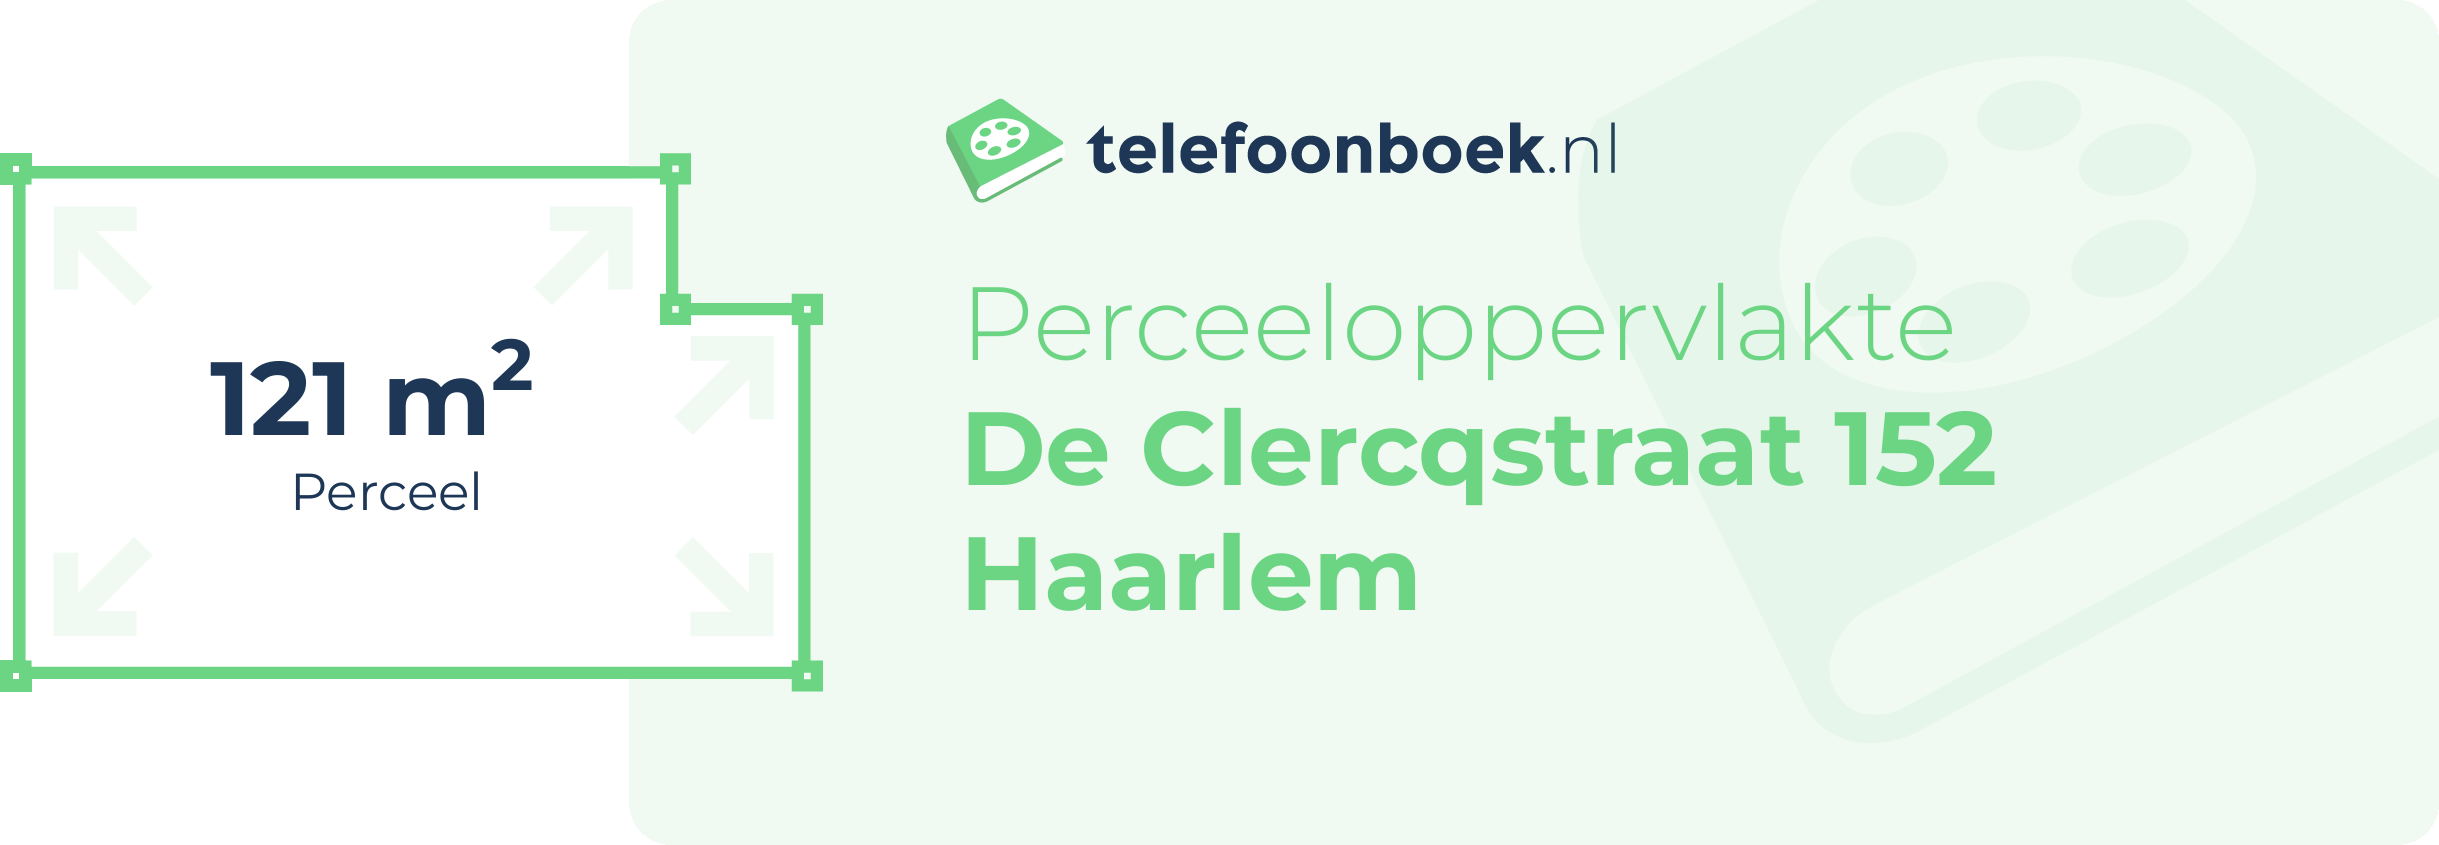 Perceeloppervlakte De Clercqstraat 152 Haarlem